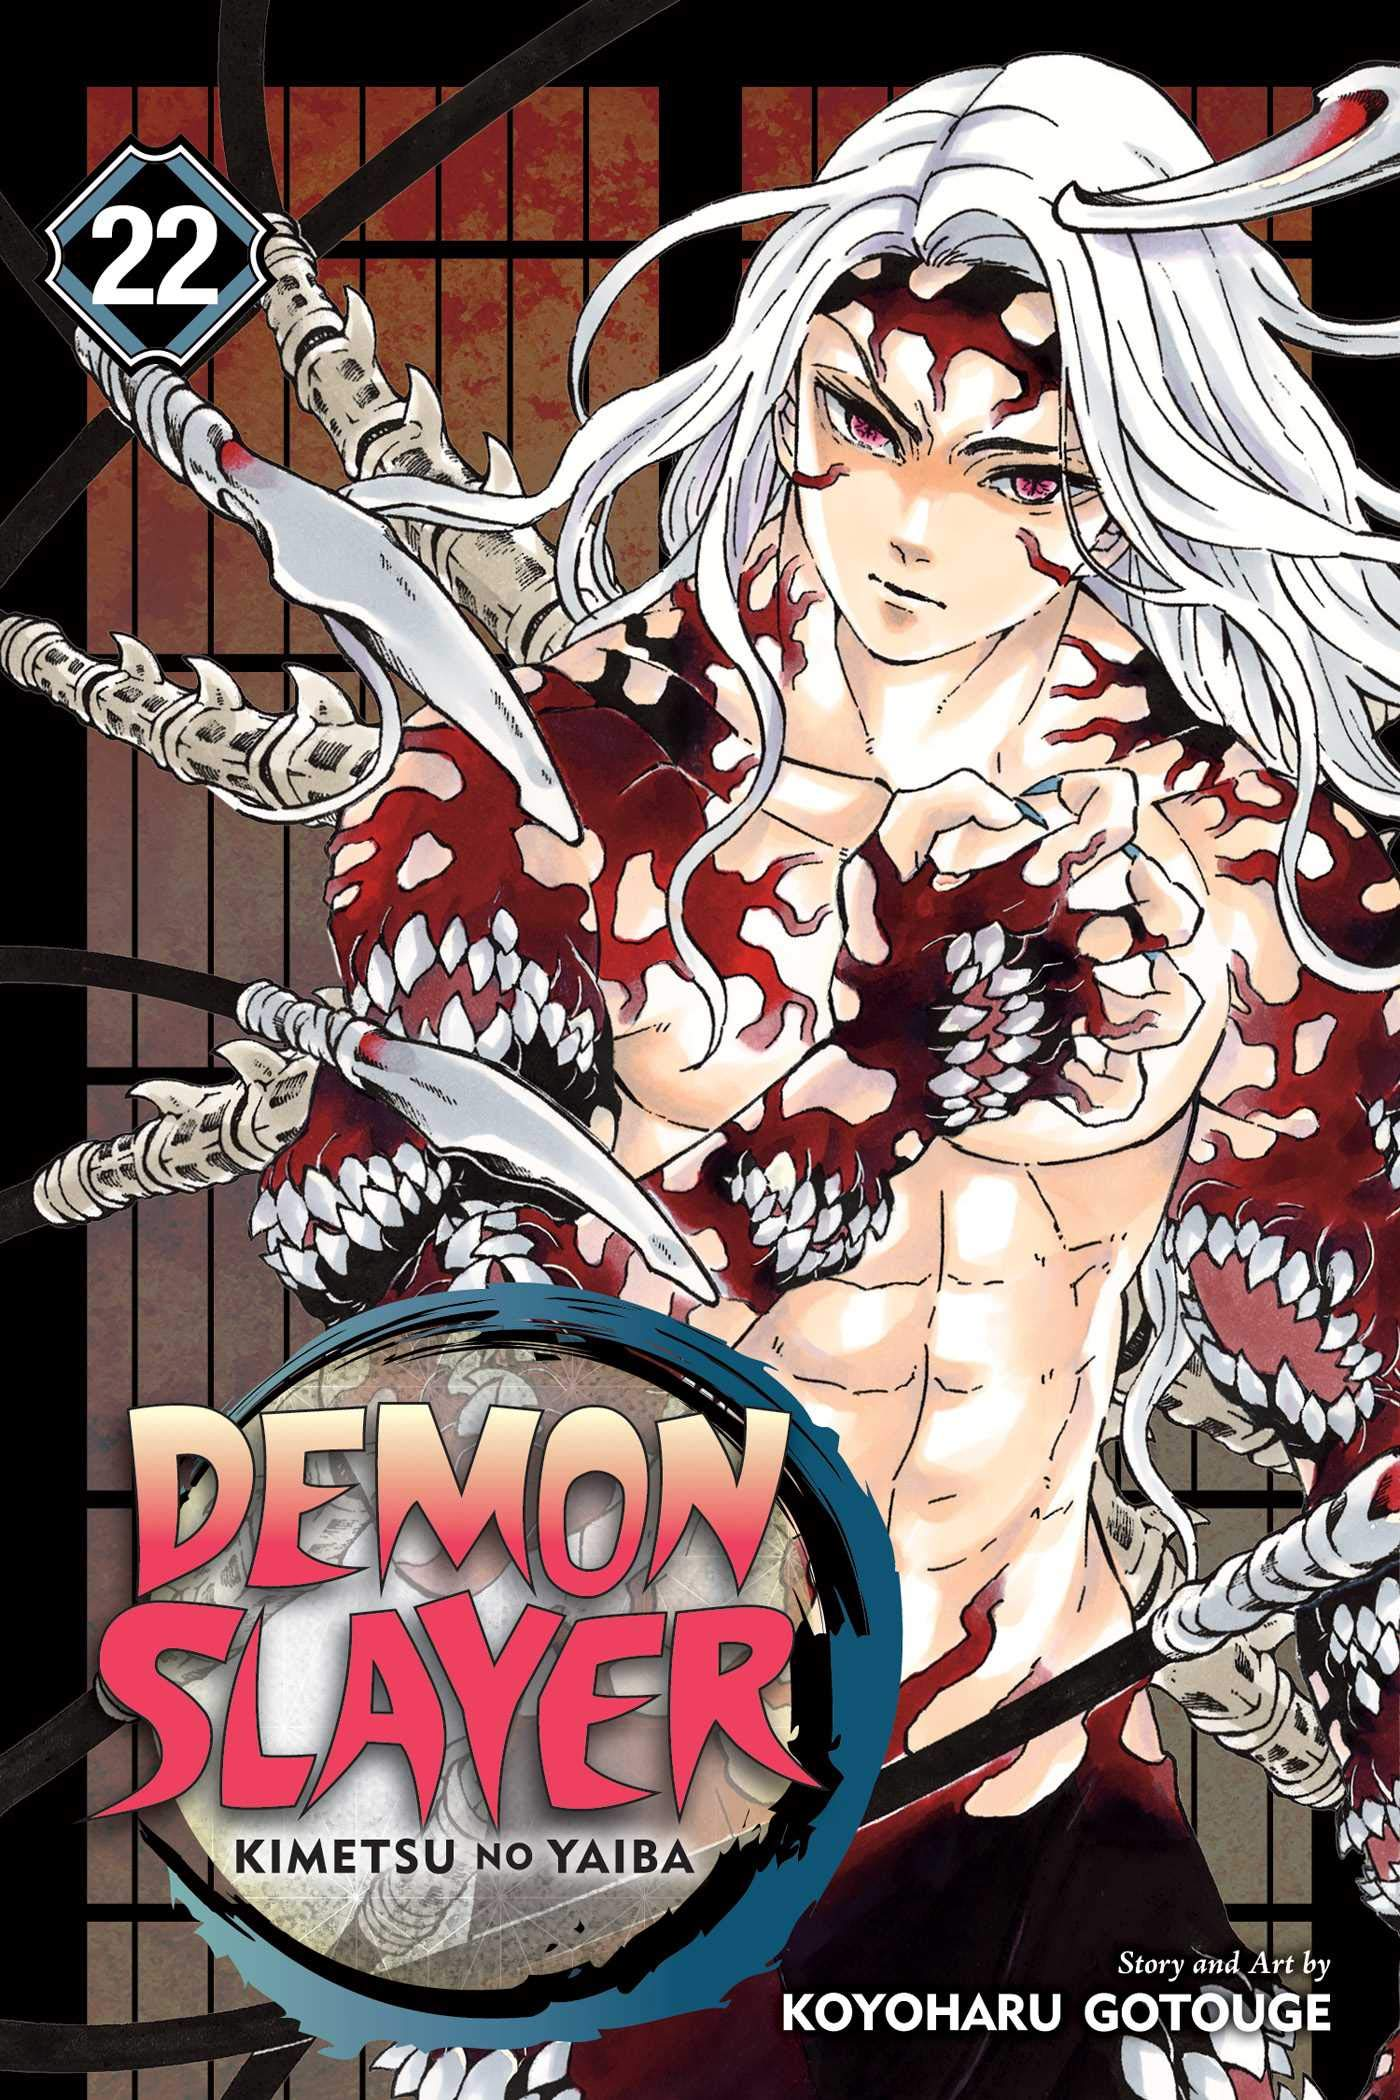 Demon Slayer: Kimetsu no Yaiba (season 2) - Wikipedia